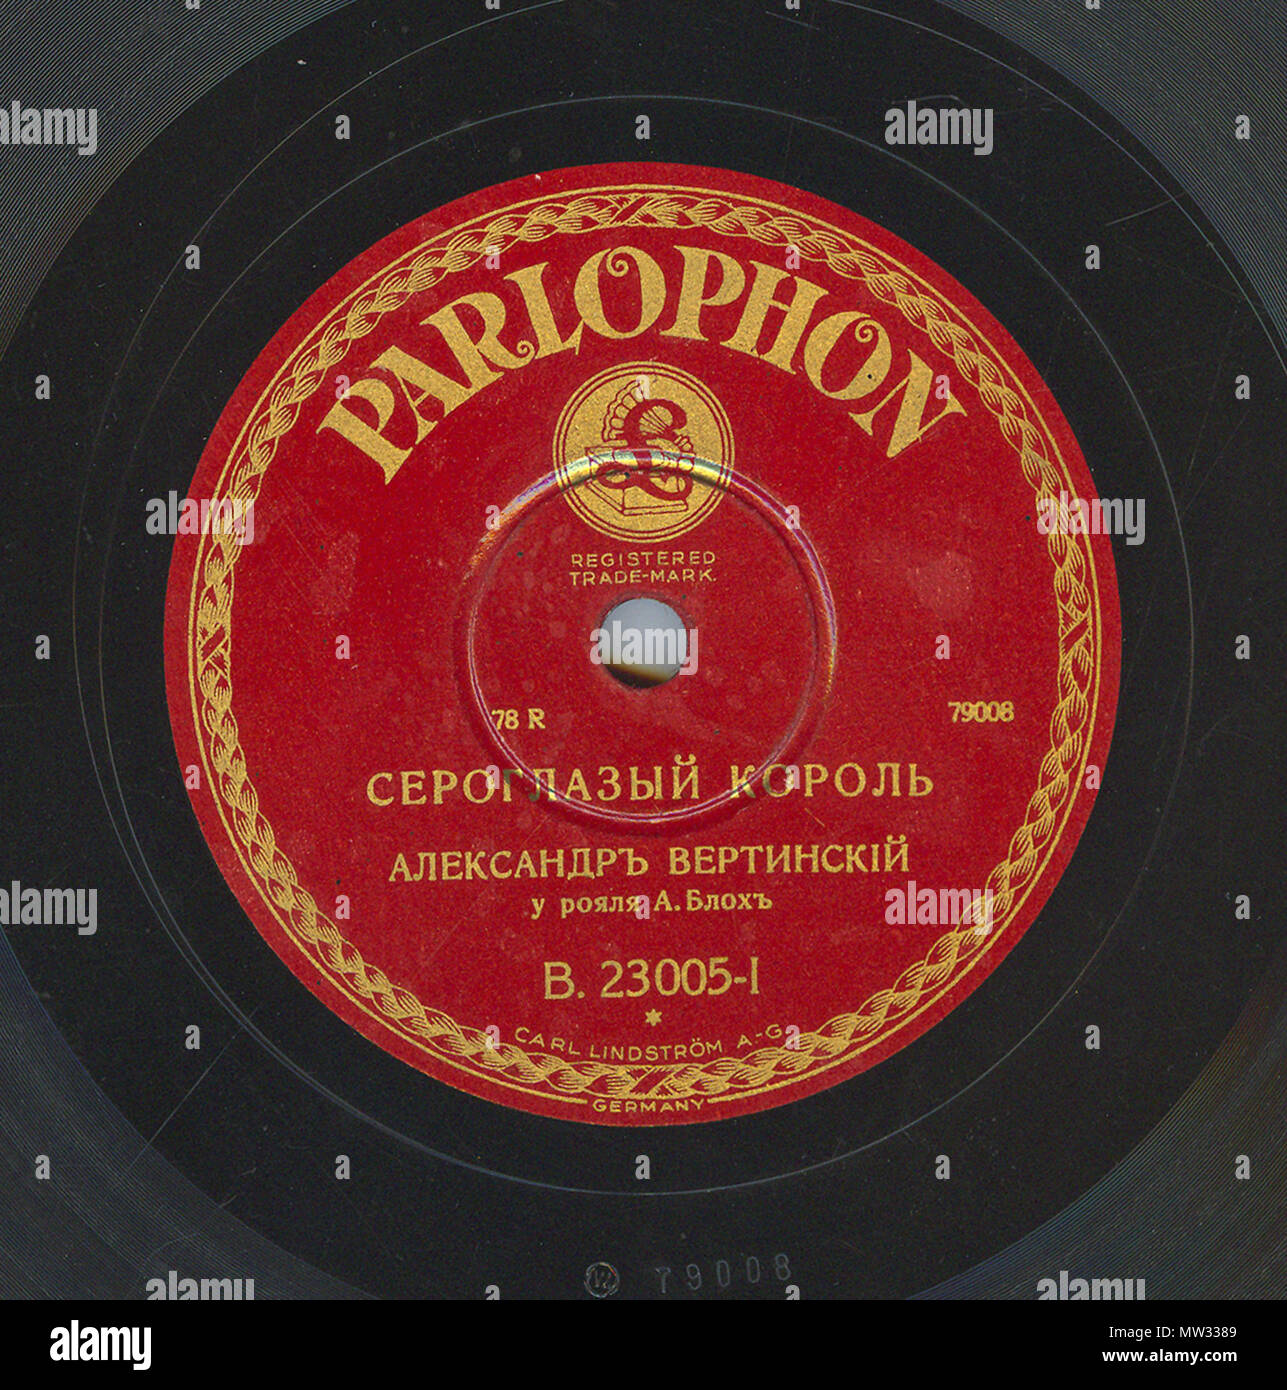 . Englisch: Vertinsky Parlophone B. 23005 01. 6. April 2010, 12:04:32. Parlophone 629 Vertinsky Parlophone B. 23005, 01. Stockfoto